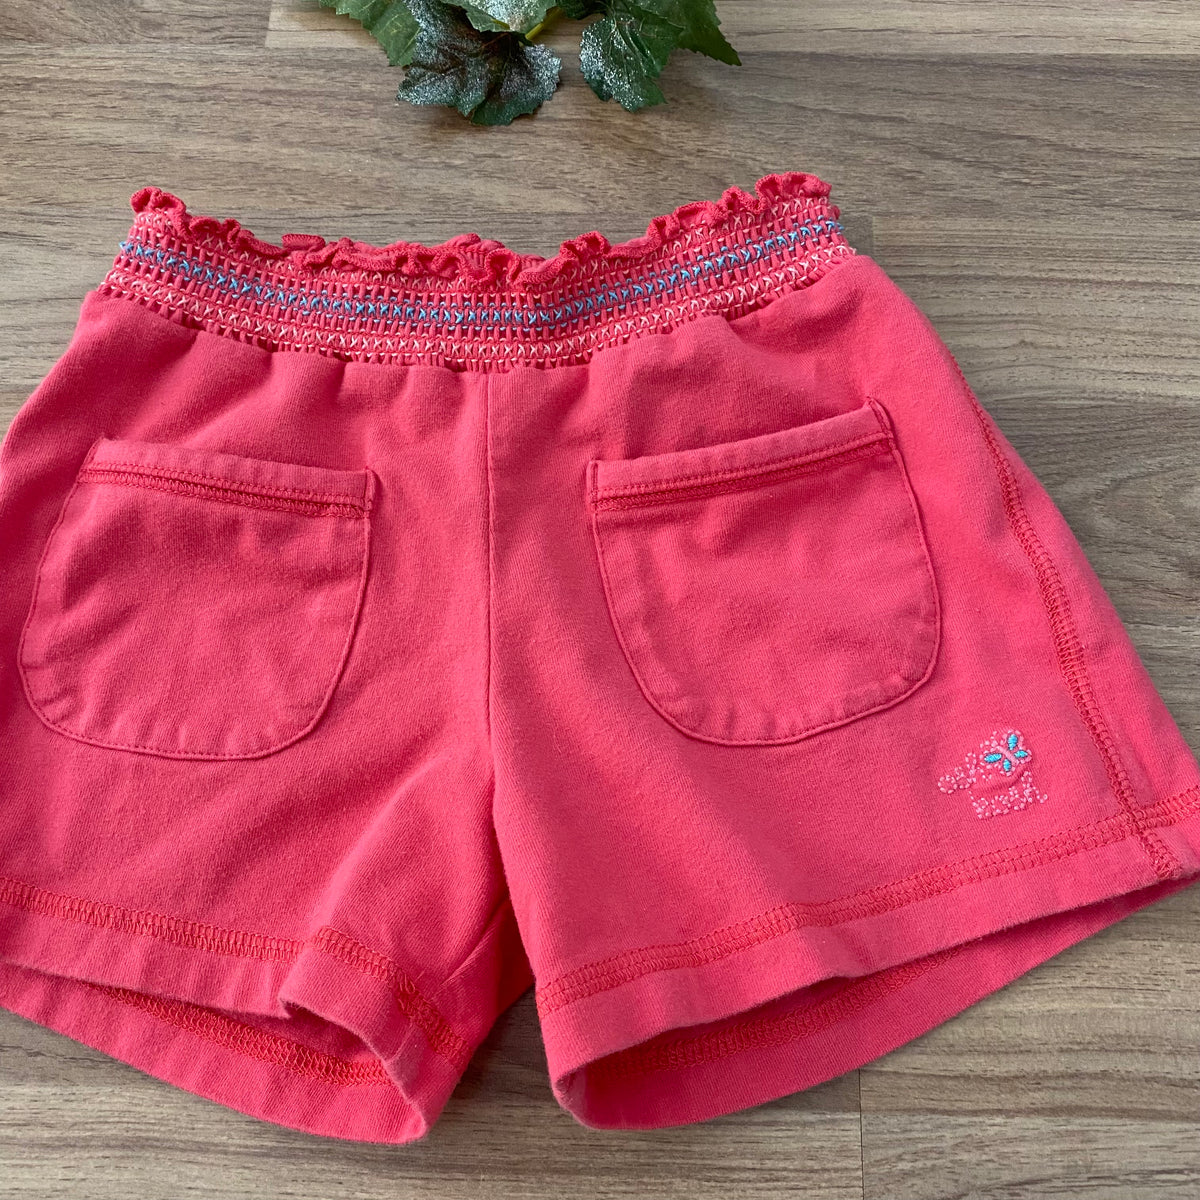 Shorts (Girls Size 5)